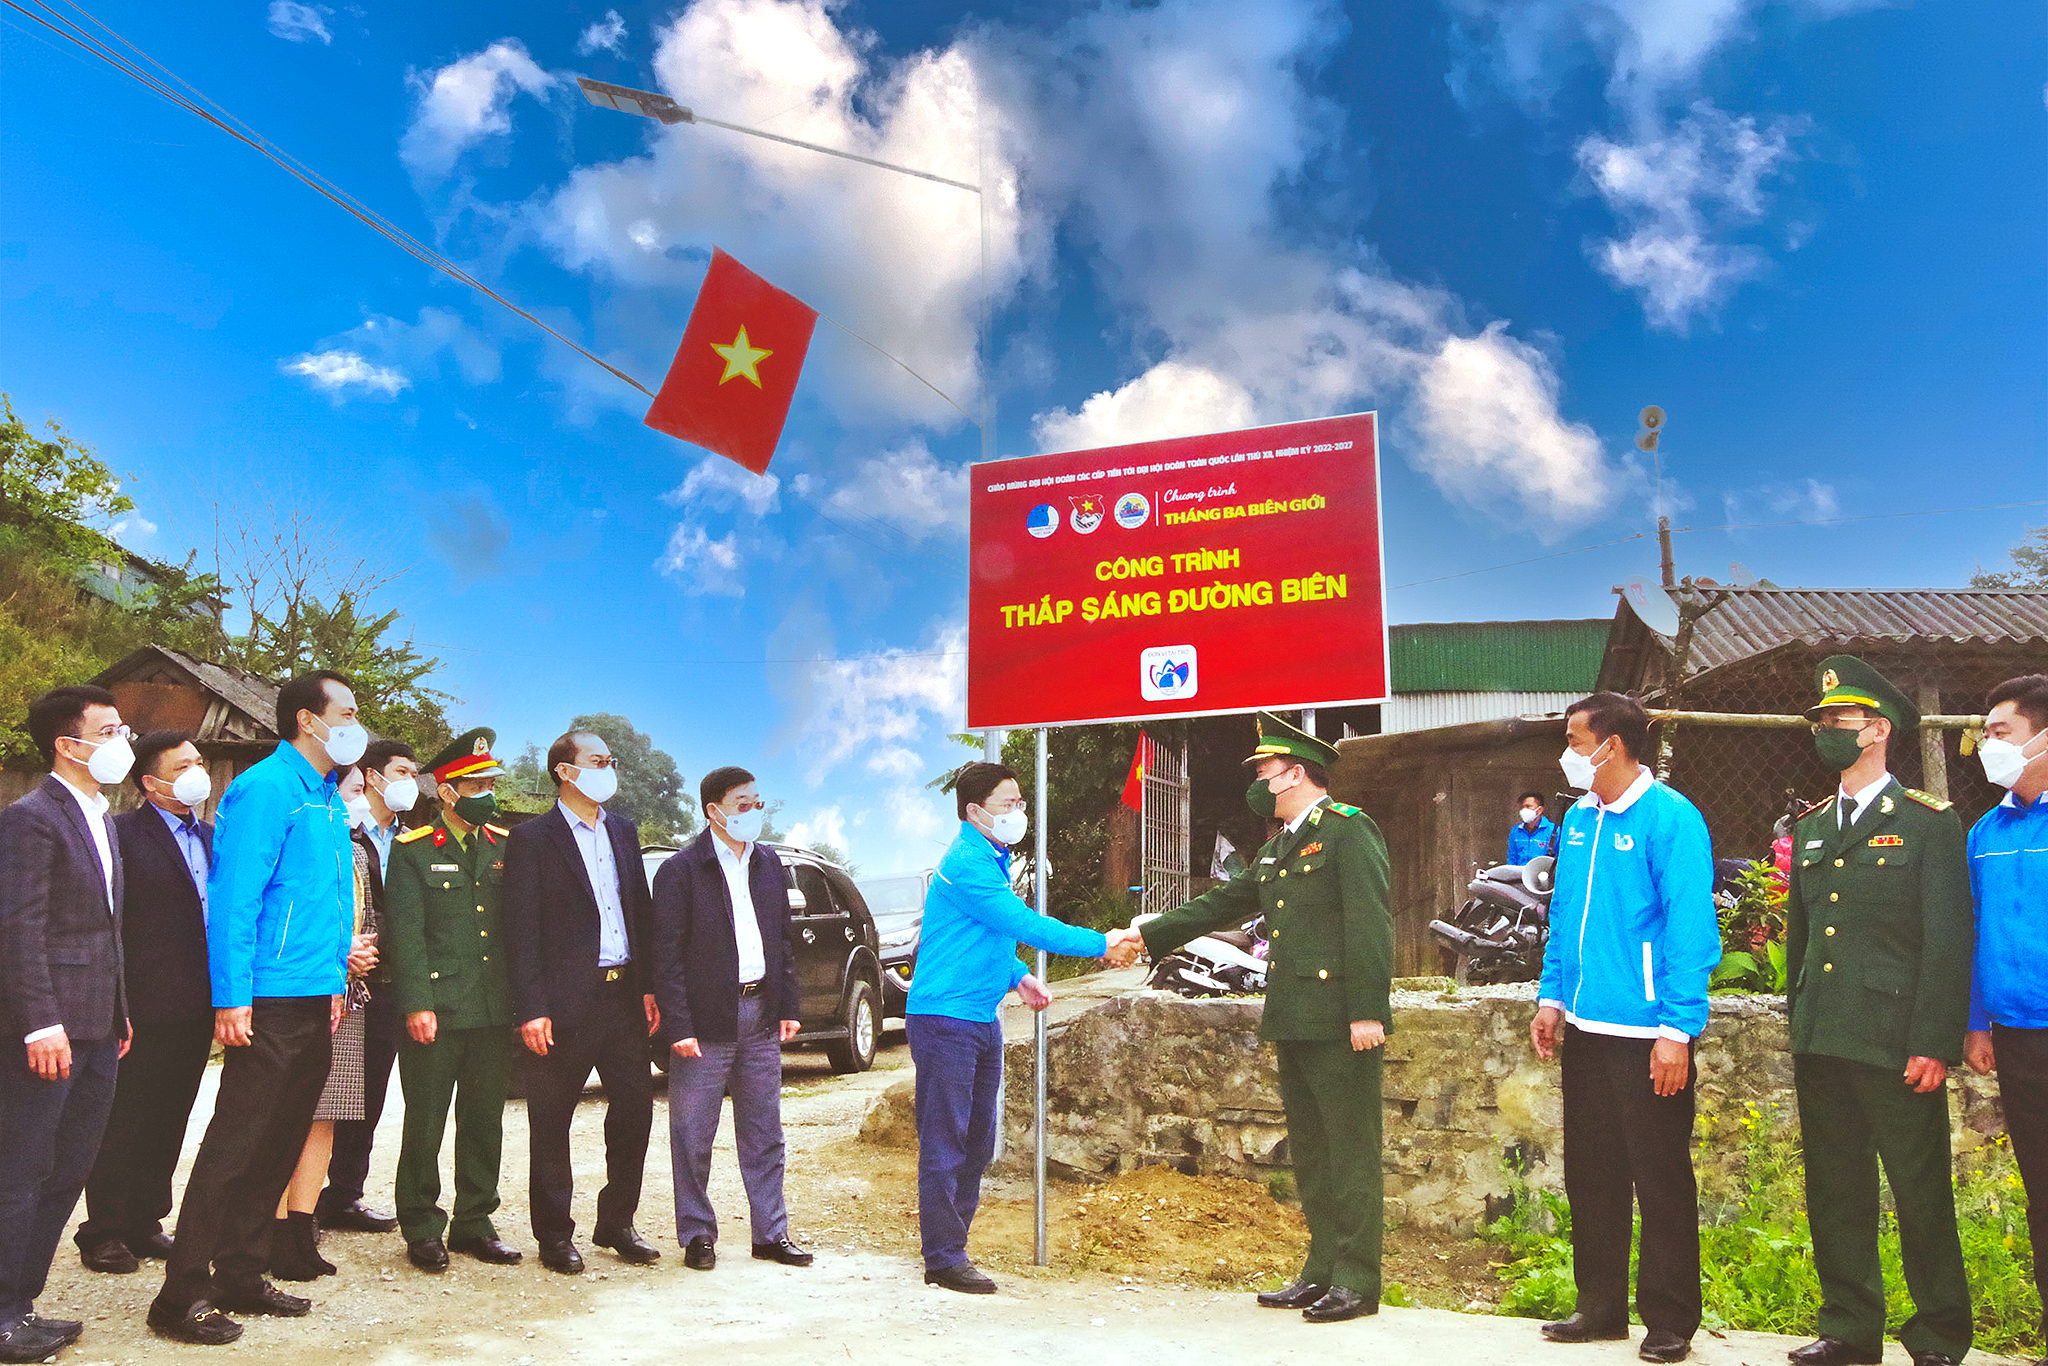 Các đại biểu khánh thành công trình thắp sáng đường biên trong chương trình “Tháng Ba biên giới” do Trung ương Đoàn phối hợp Bộ Tư lệnh BĐBP tổ chức tại xã Nậm Cắn (Kỳ Sơn).